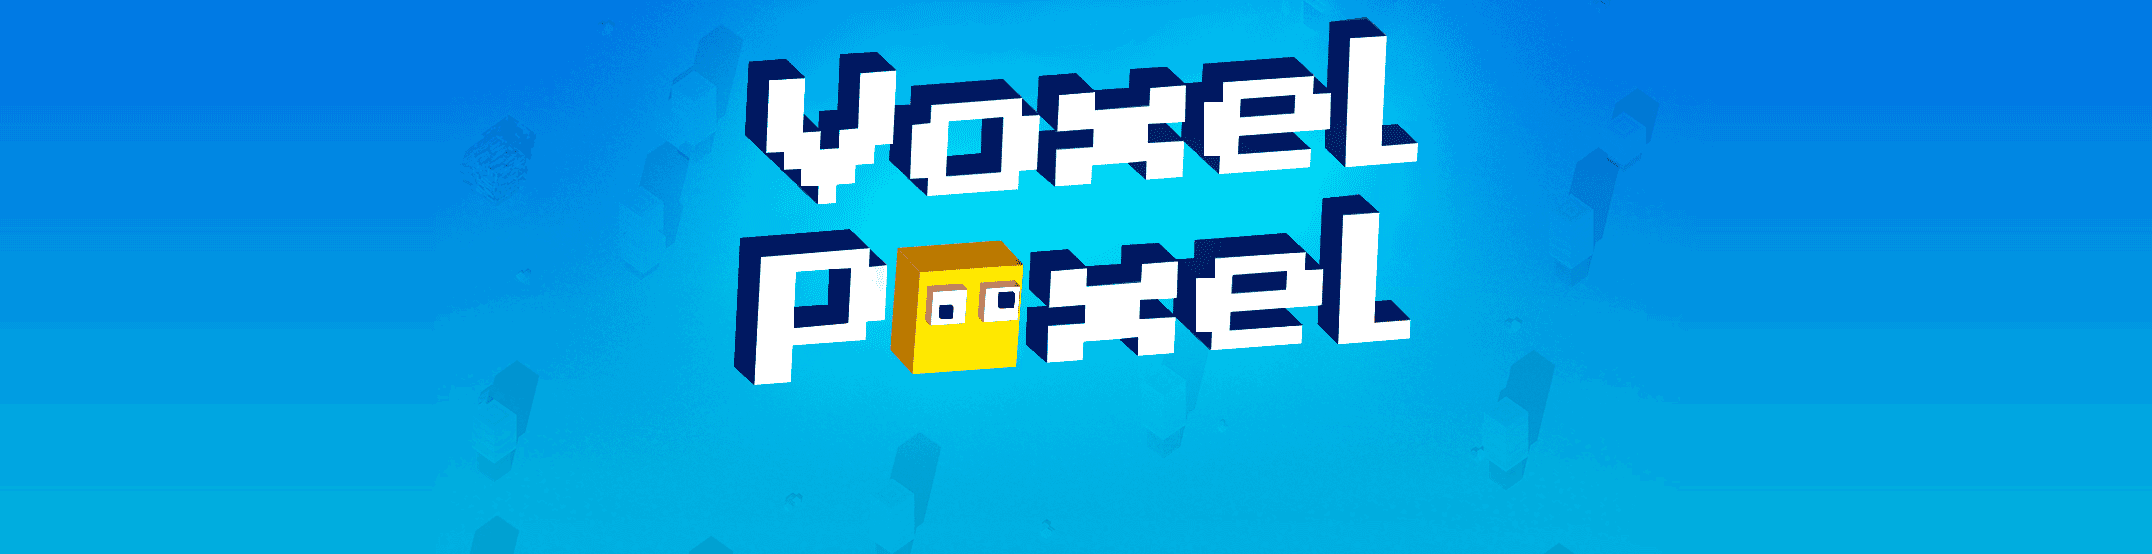 Voxel Poxel - жанр .io